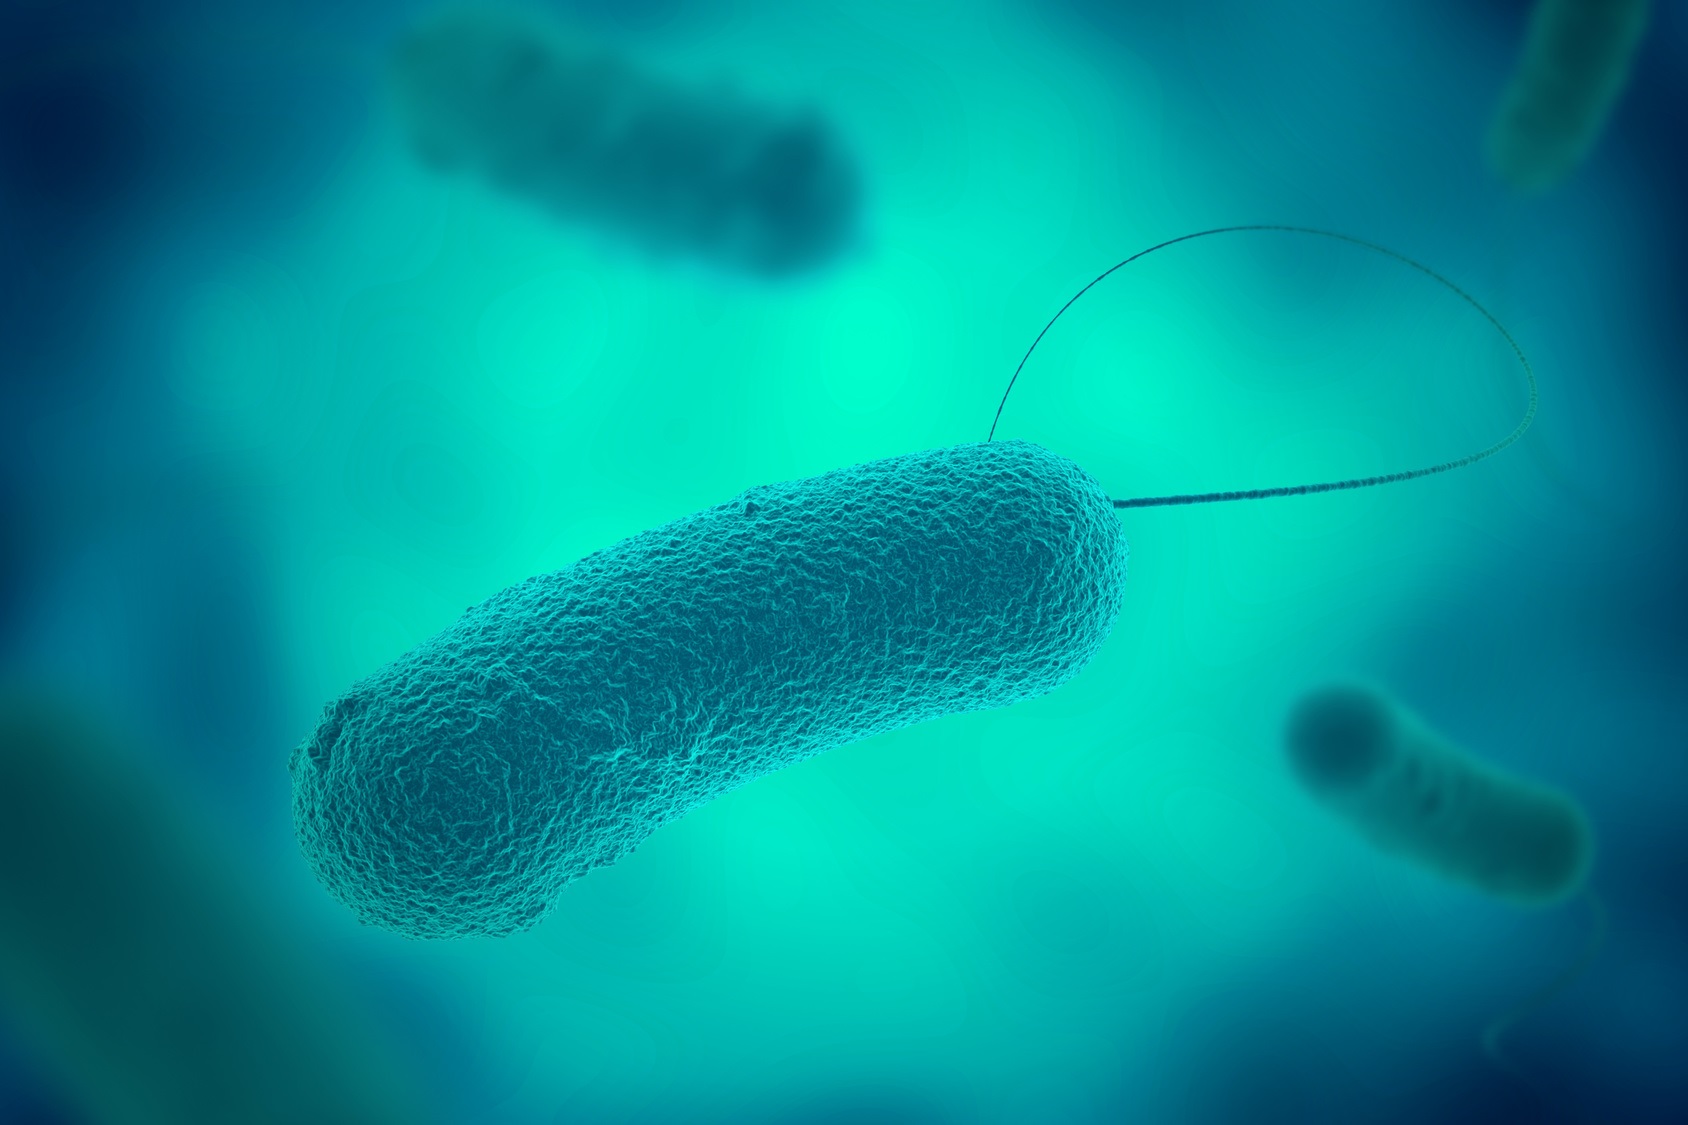 Des bactéries possèdent un flagelle pour se déplacer. © Shawn Hempel, fotolia